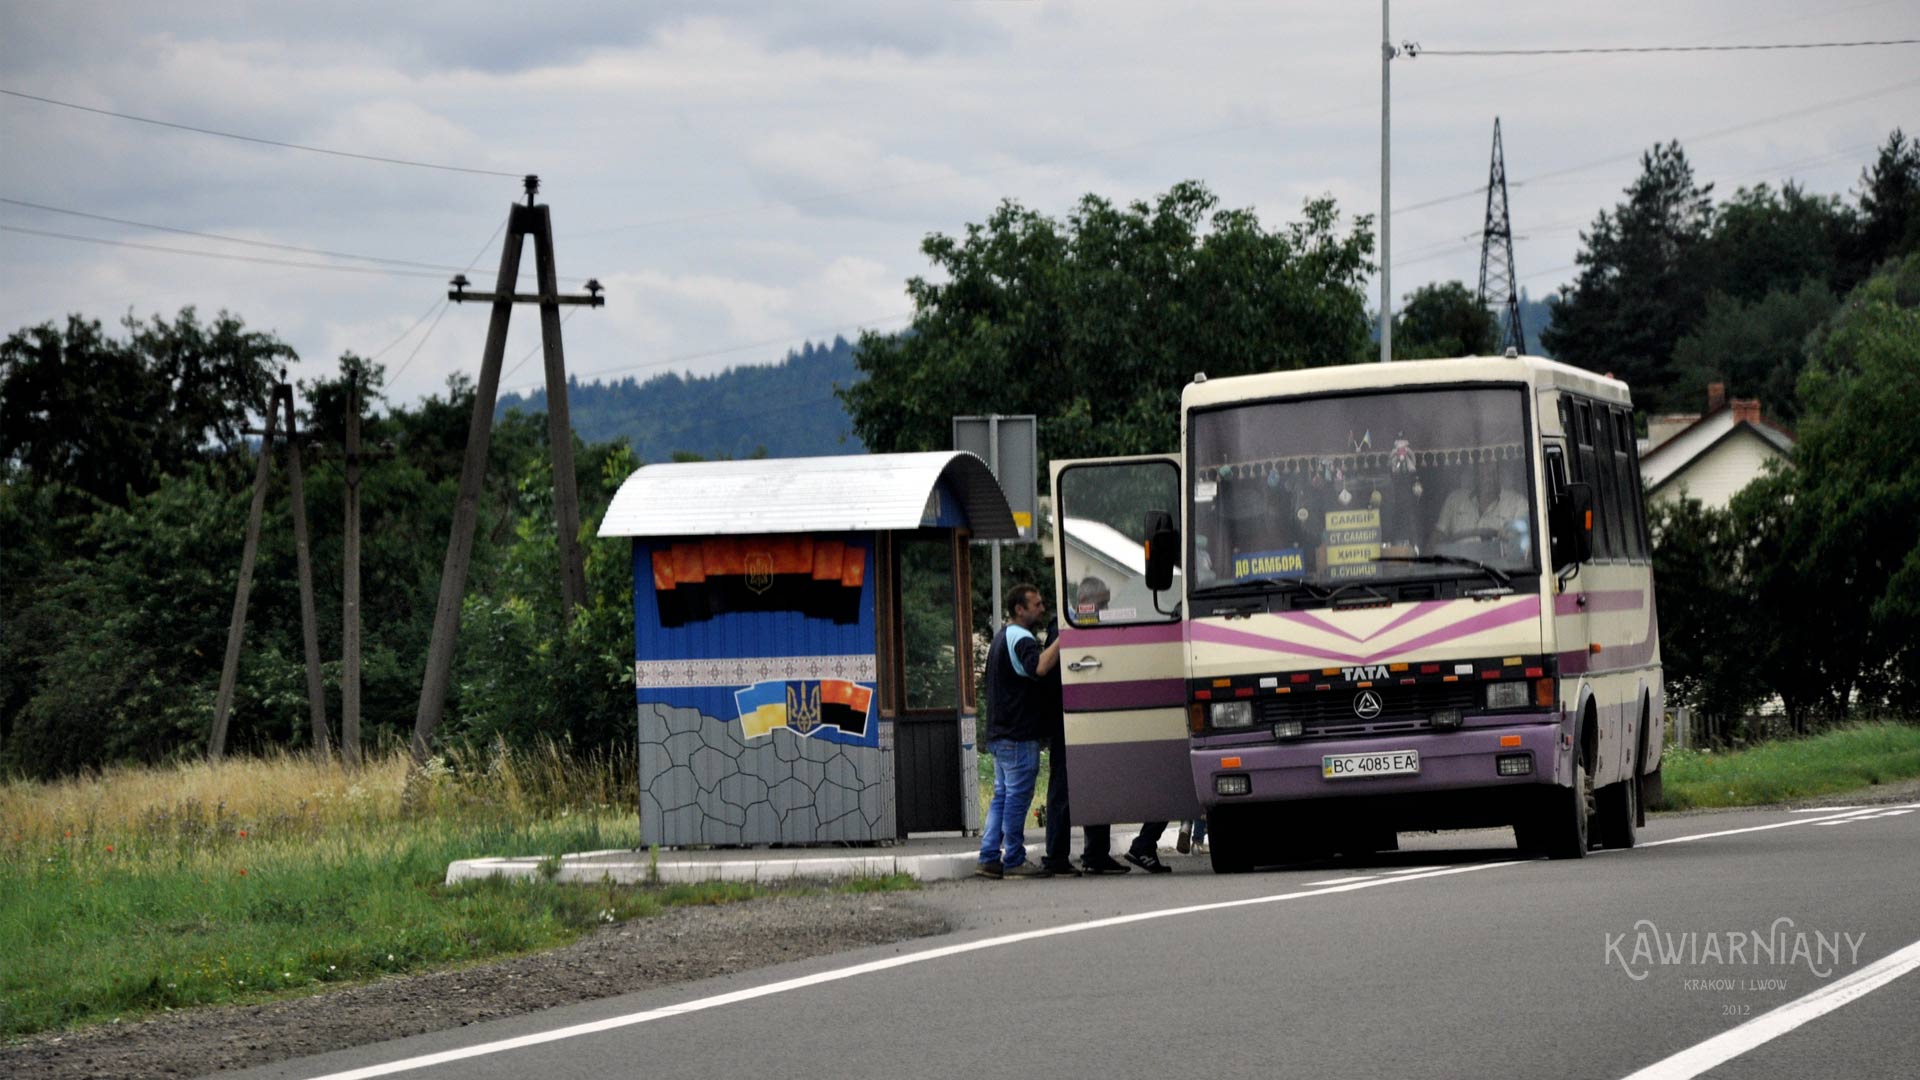 Ukraina: transport publiczny między regionami tylko z paszportem COVID lub testem